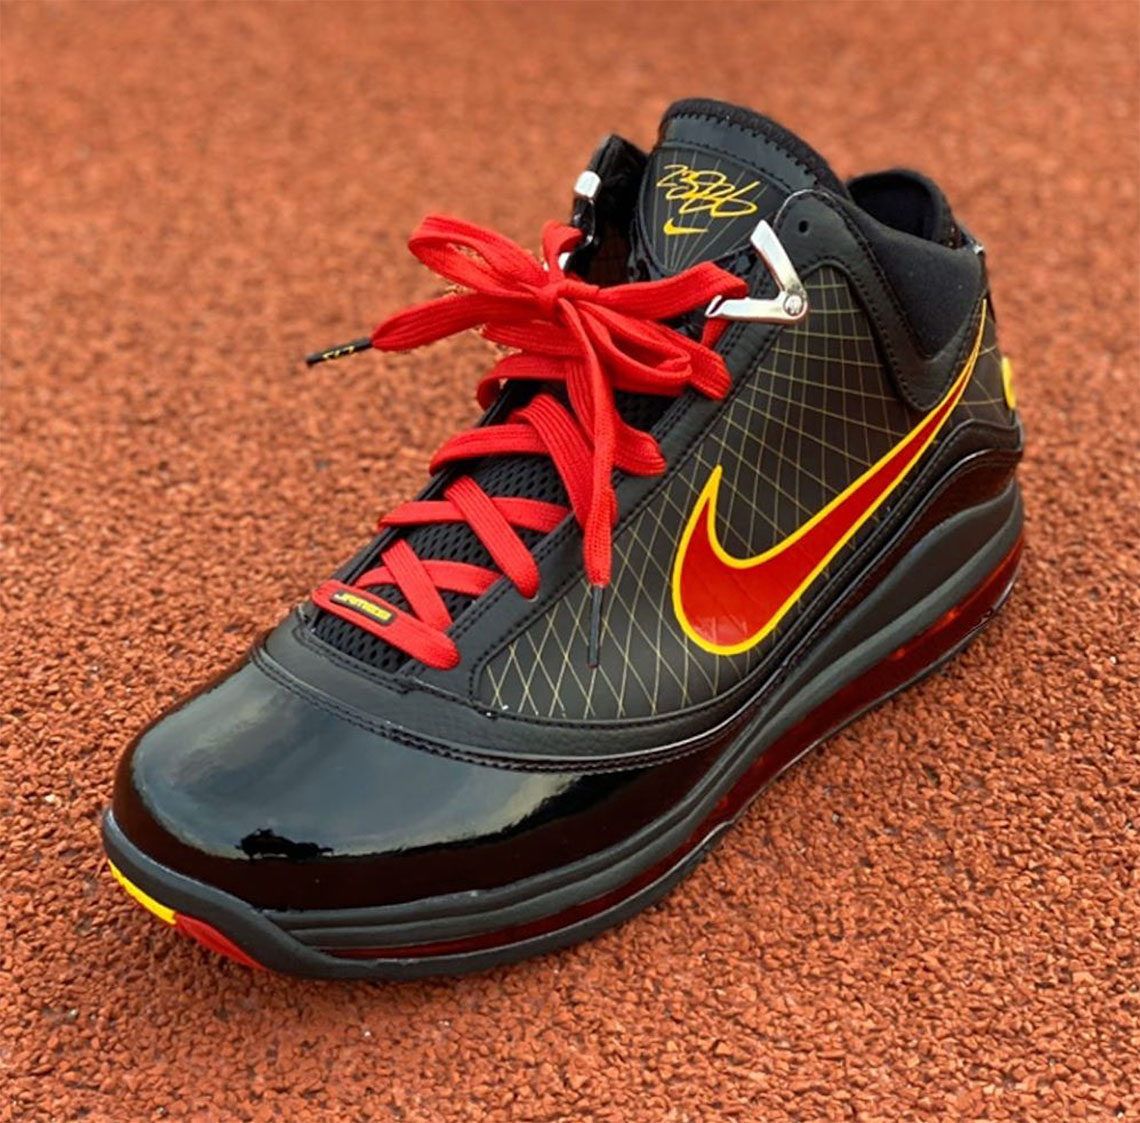 Nike Lebron 7 Fairfax Cu5646 001 Release Date 5